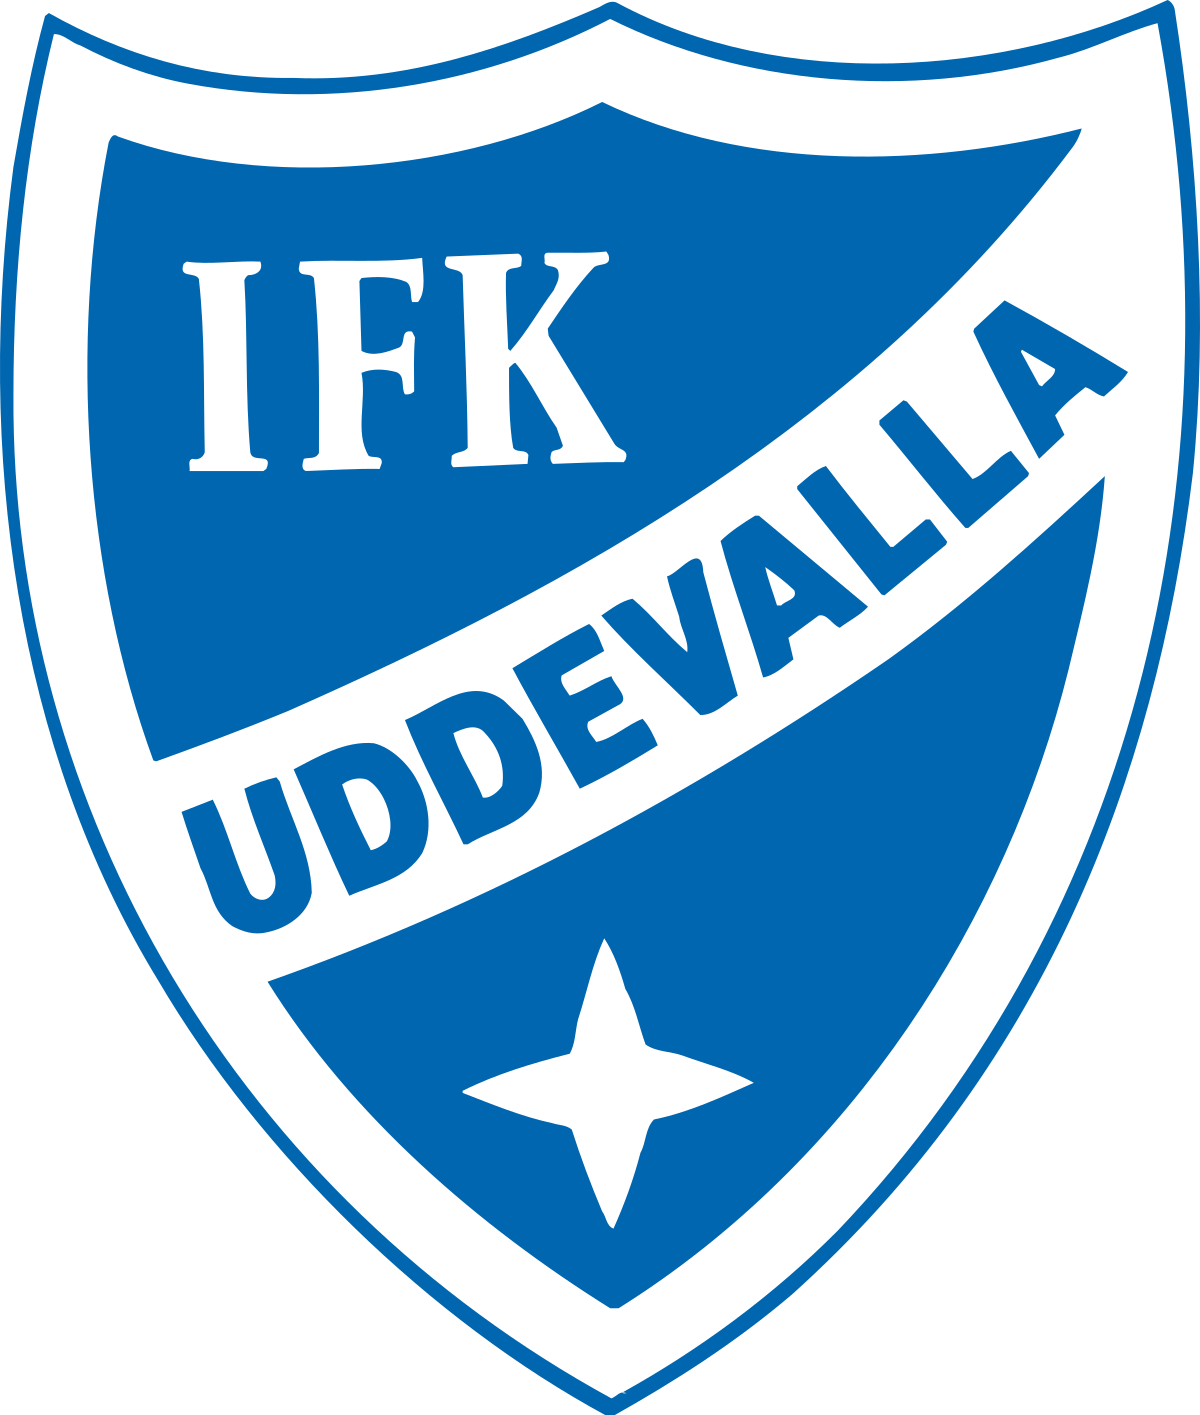 IFK Uddevalla 2